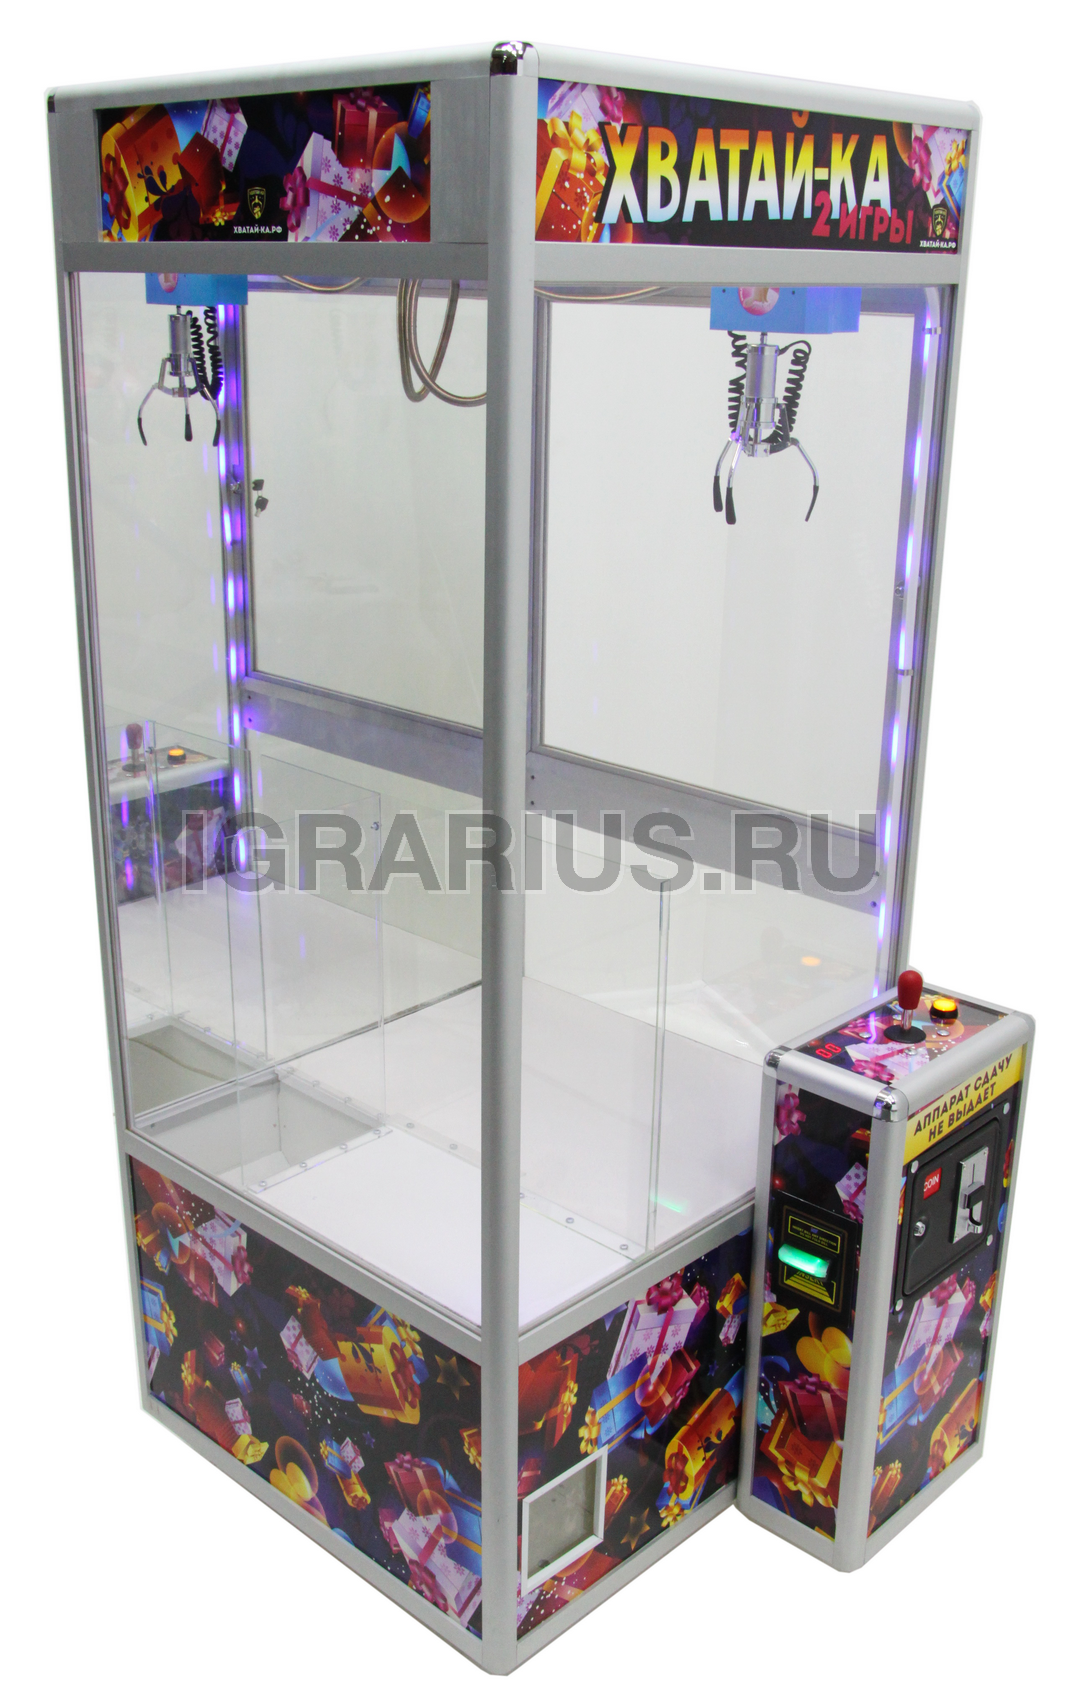 Сколько стоит игровой автомат с игрушками игровые автоматы пинап 1